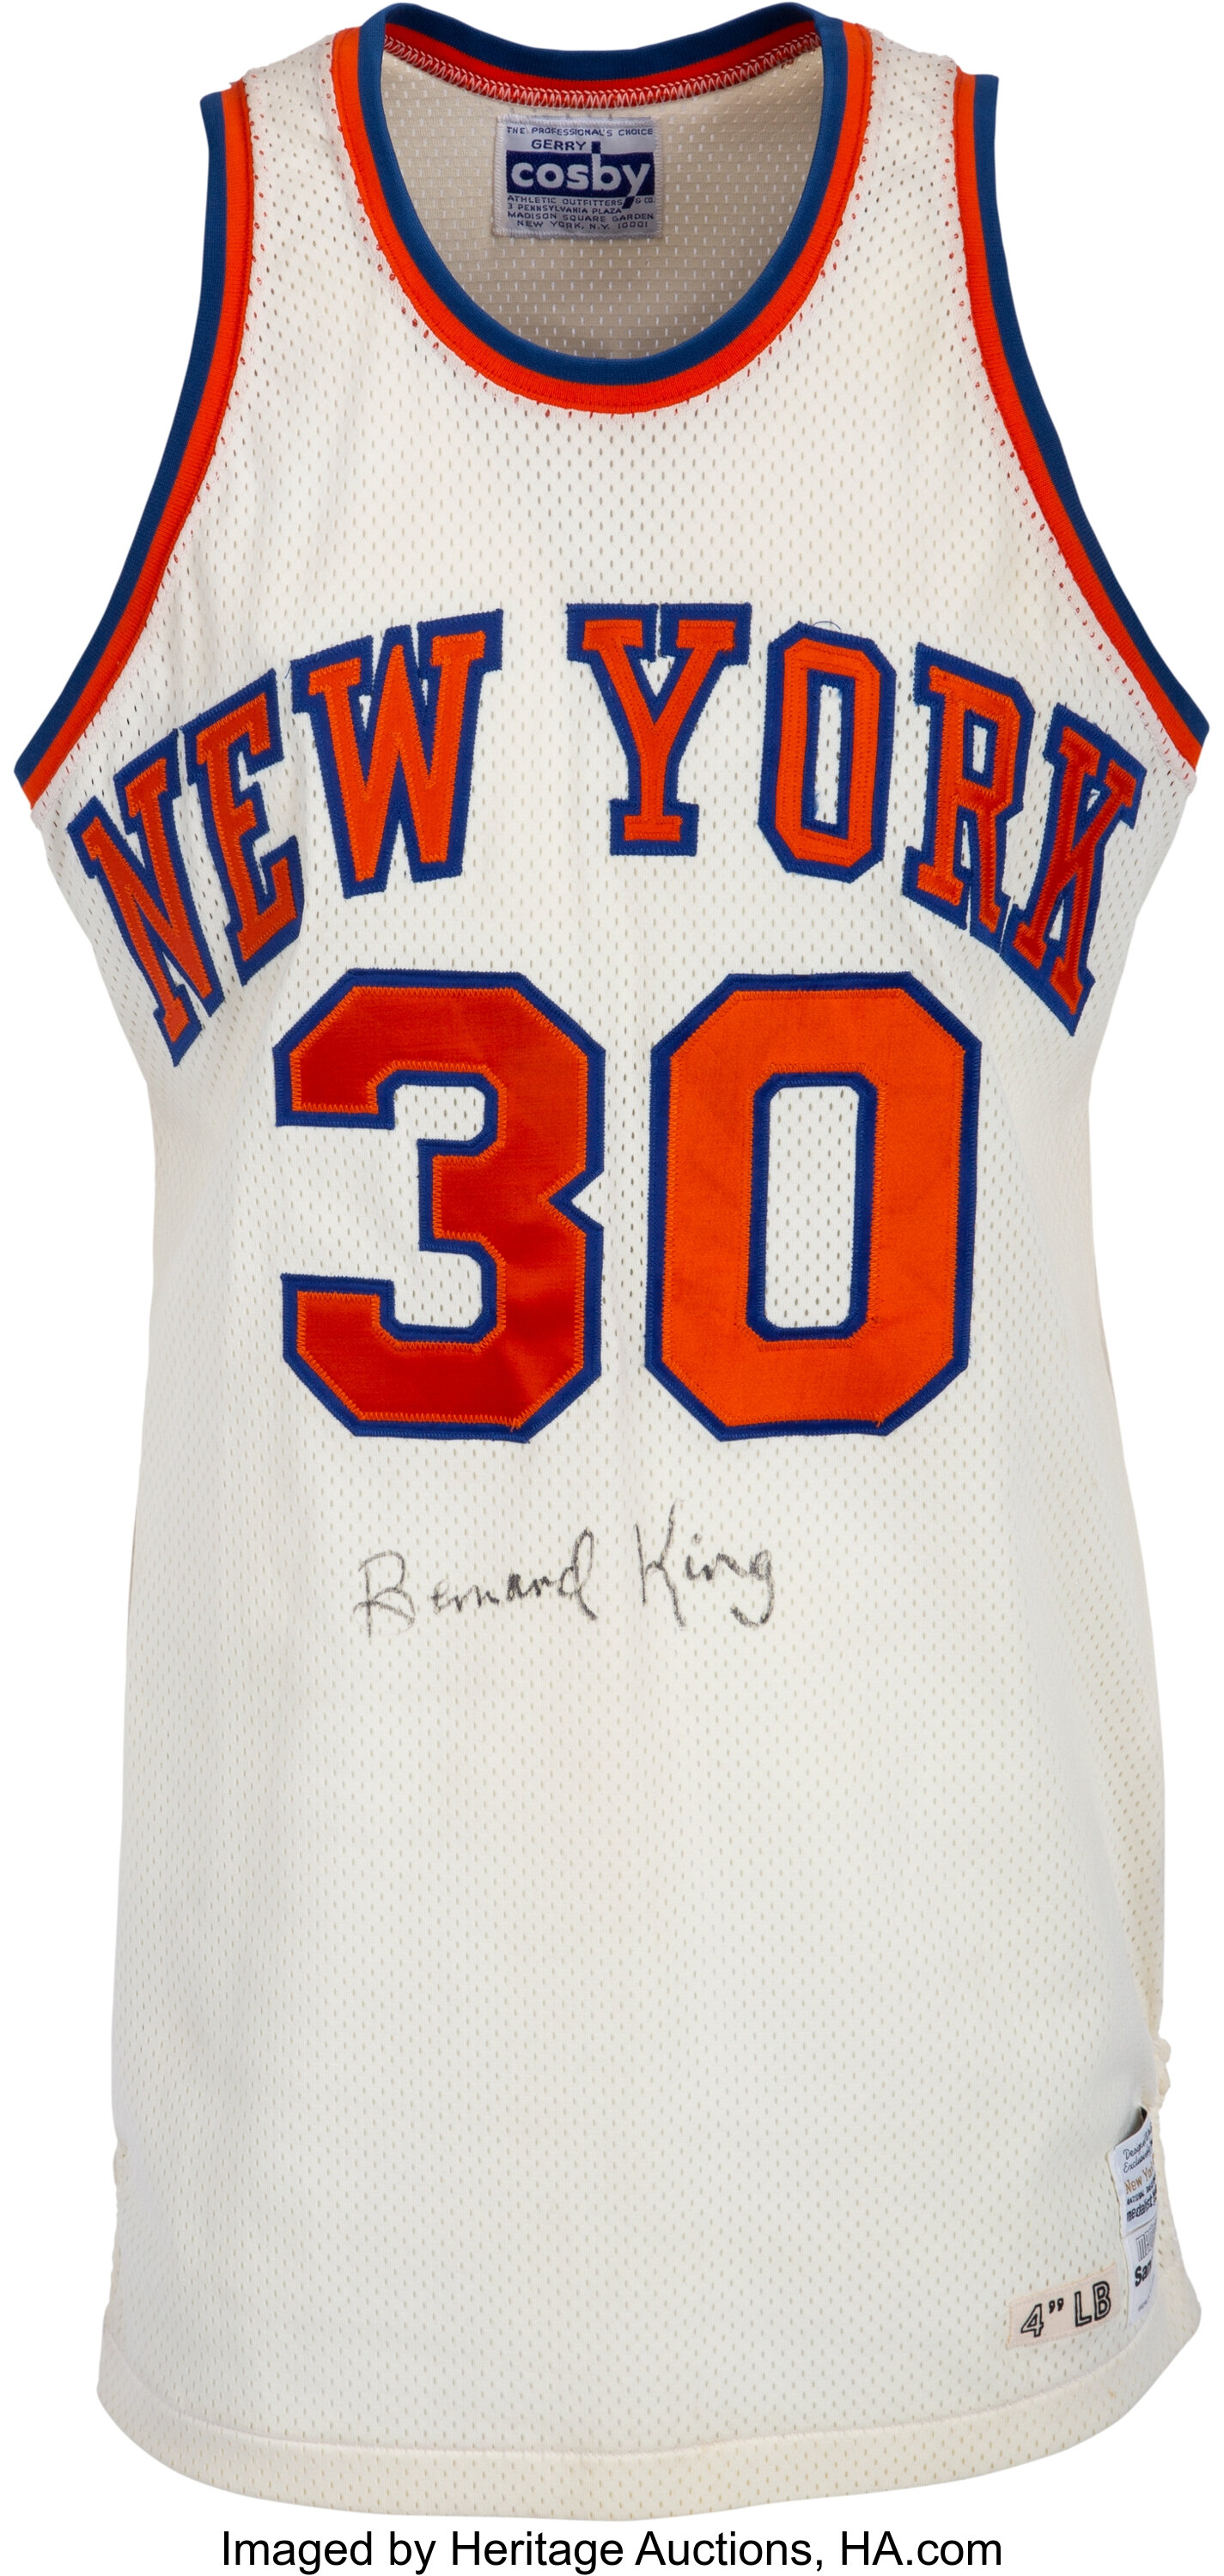 Autographed/Signed Bernard King New York Blue Basketball Jersey Beckett BAS  COA